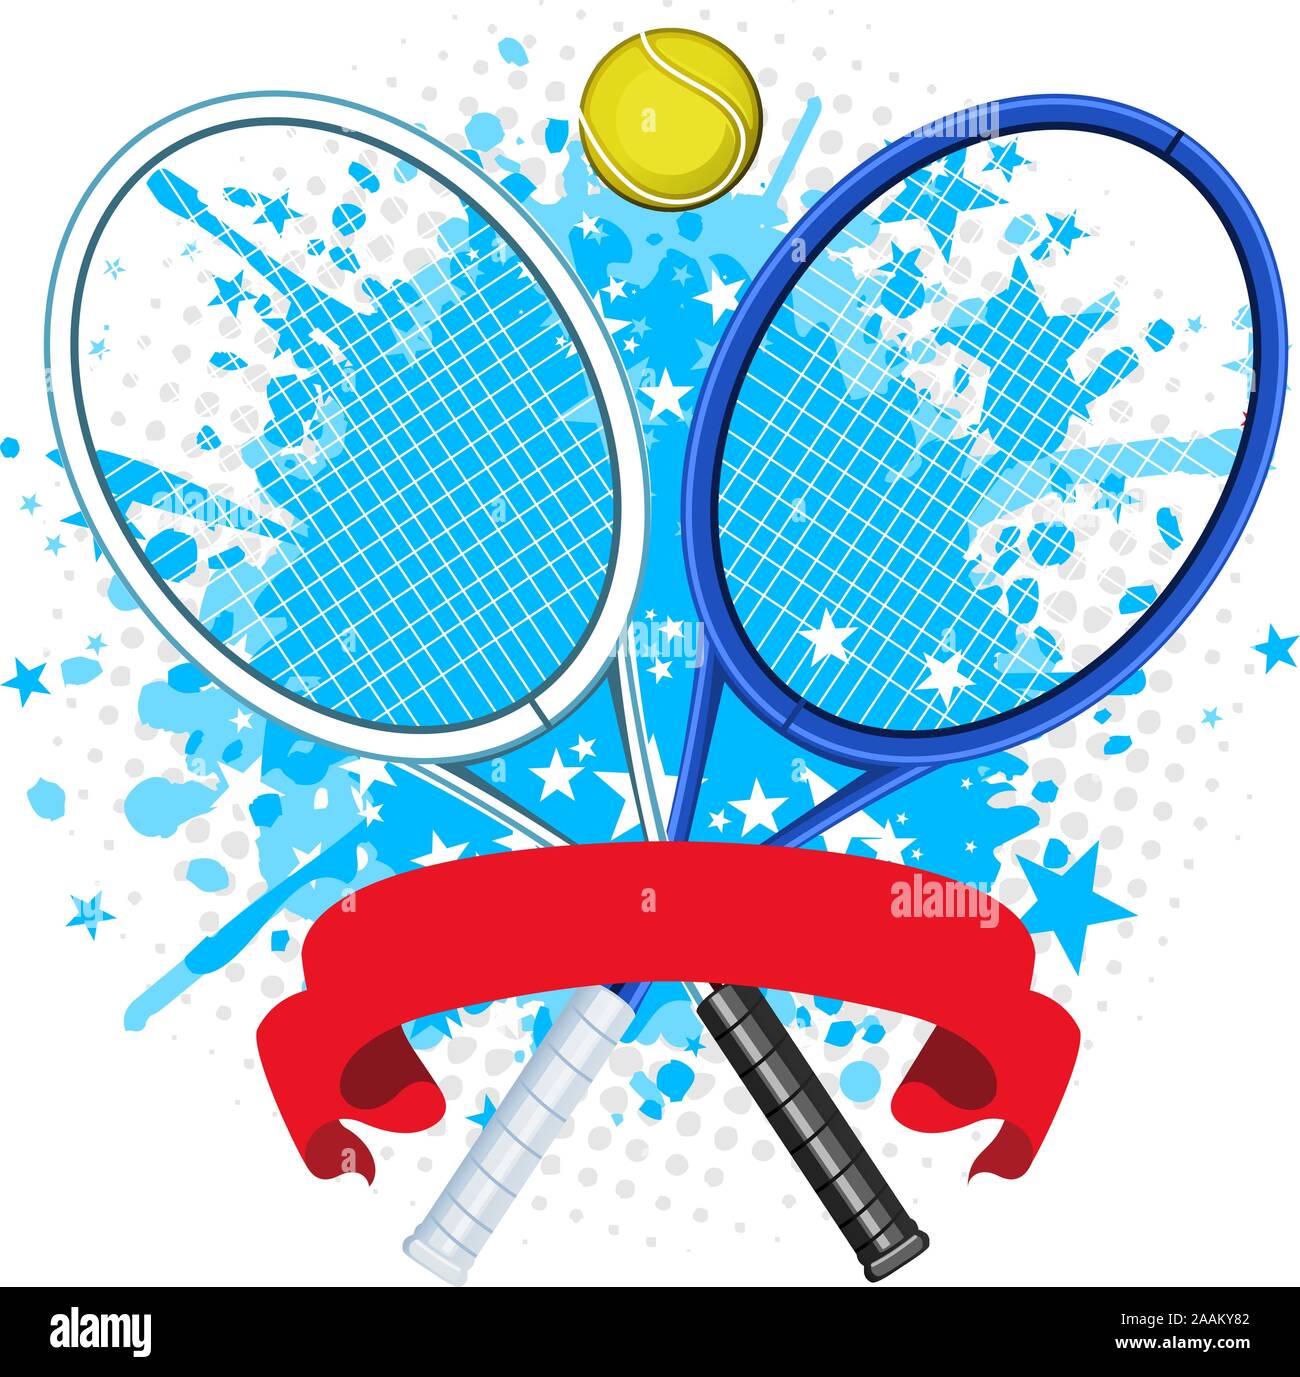 Racchetta da Tennis splash con sfera e banner rosso e forma a stella illustrazione vettoriale. Illustrazione Vettoriale